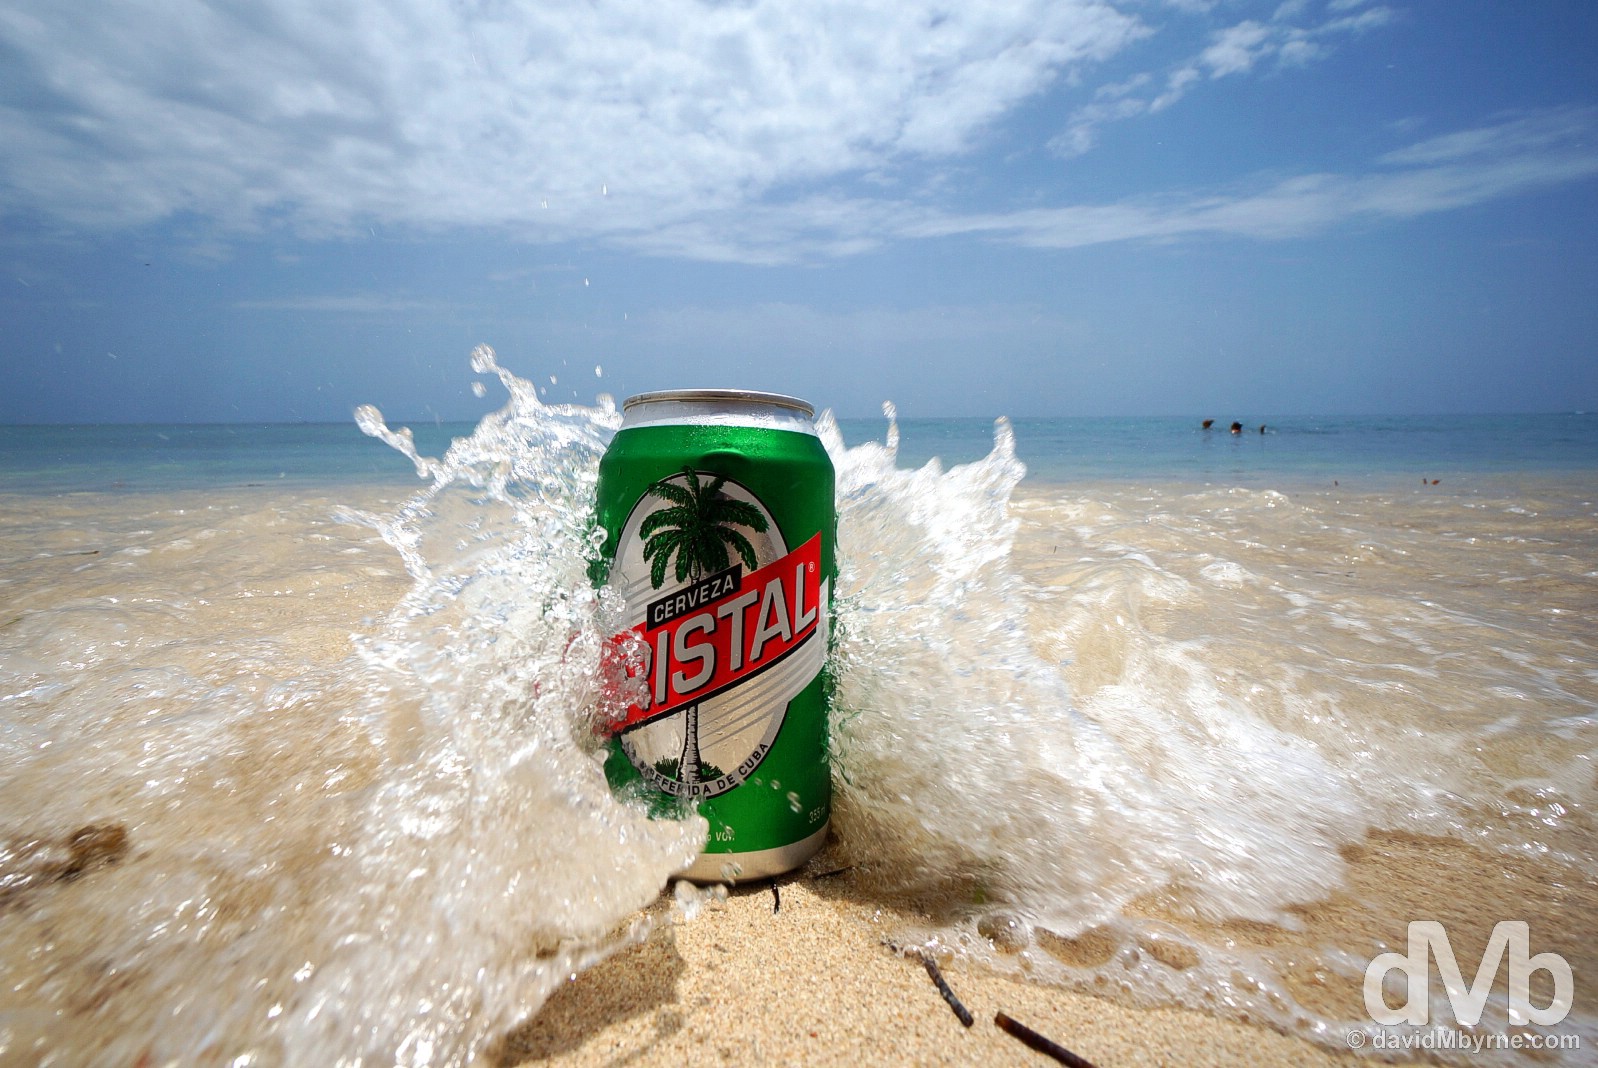 Cristal beer. Playa Ancon, Cuba. May 6, 2015.